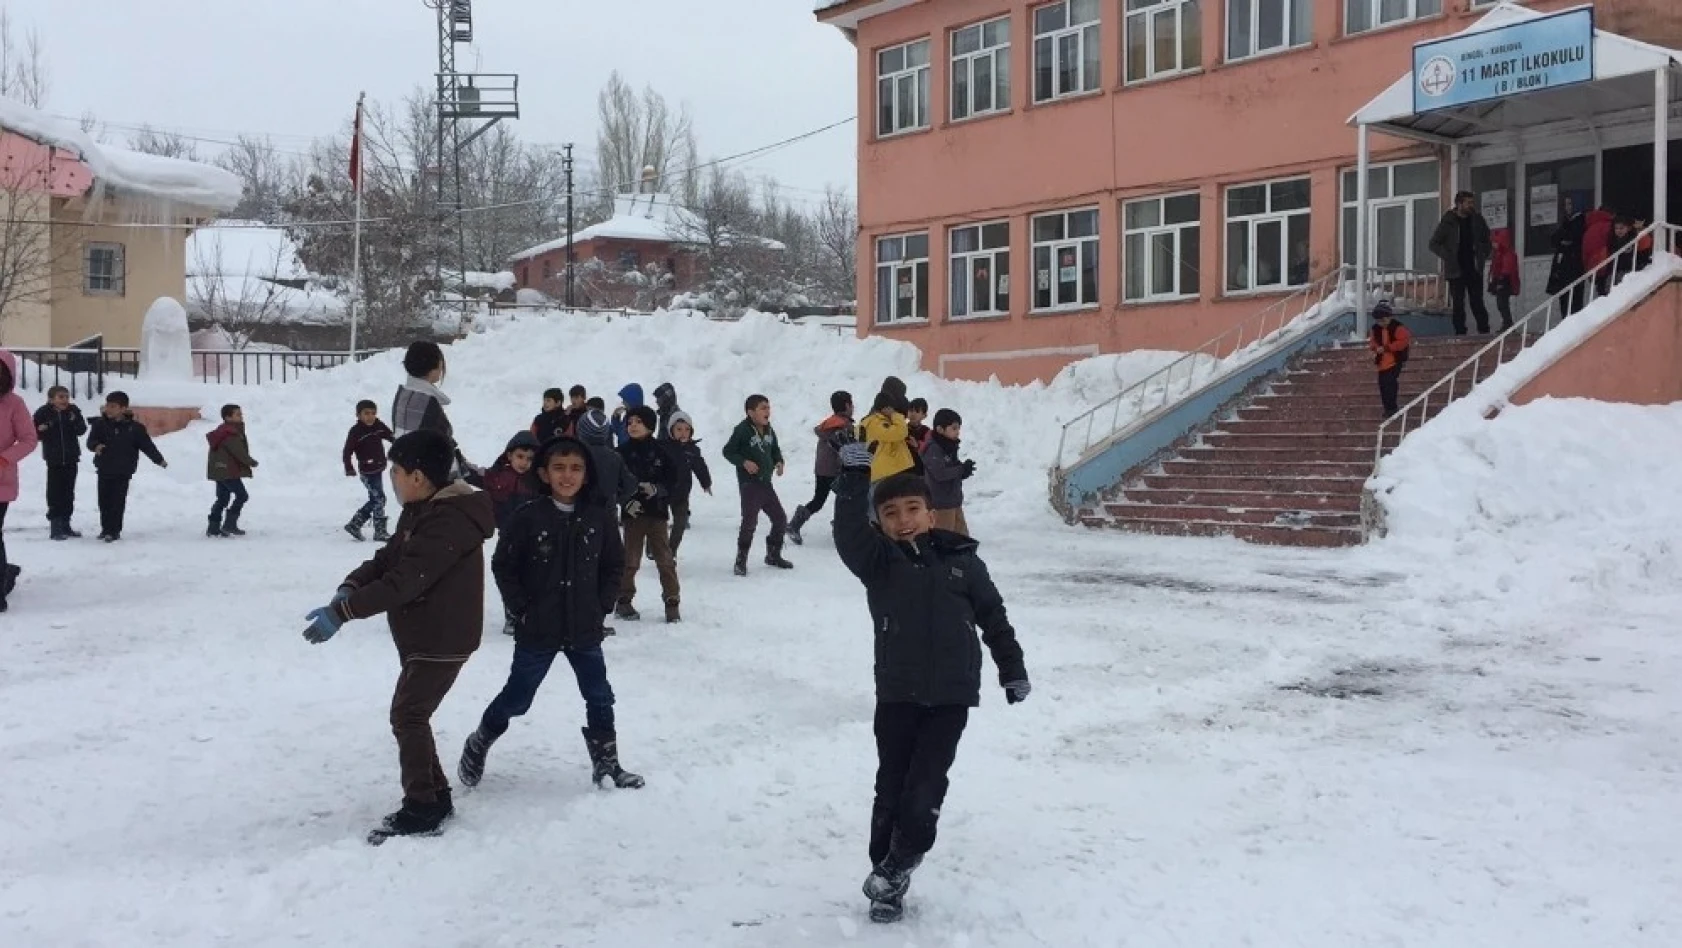 Karlıova'da öğrenciler 16 gün sonra ders başı yaptı 